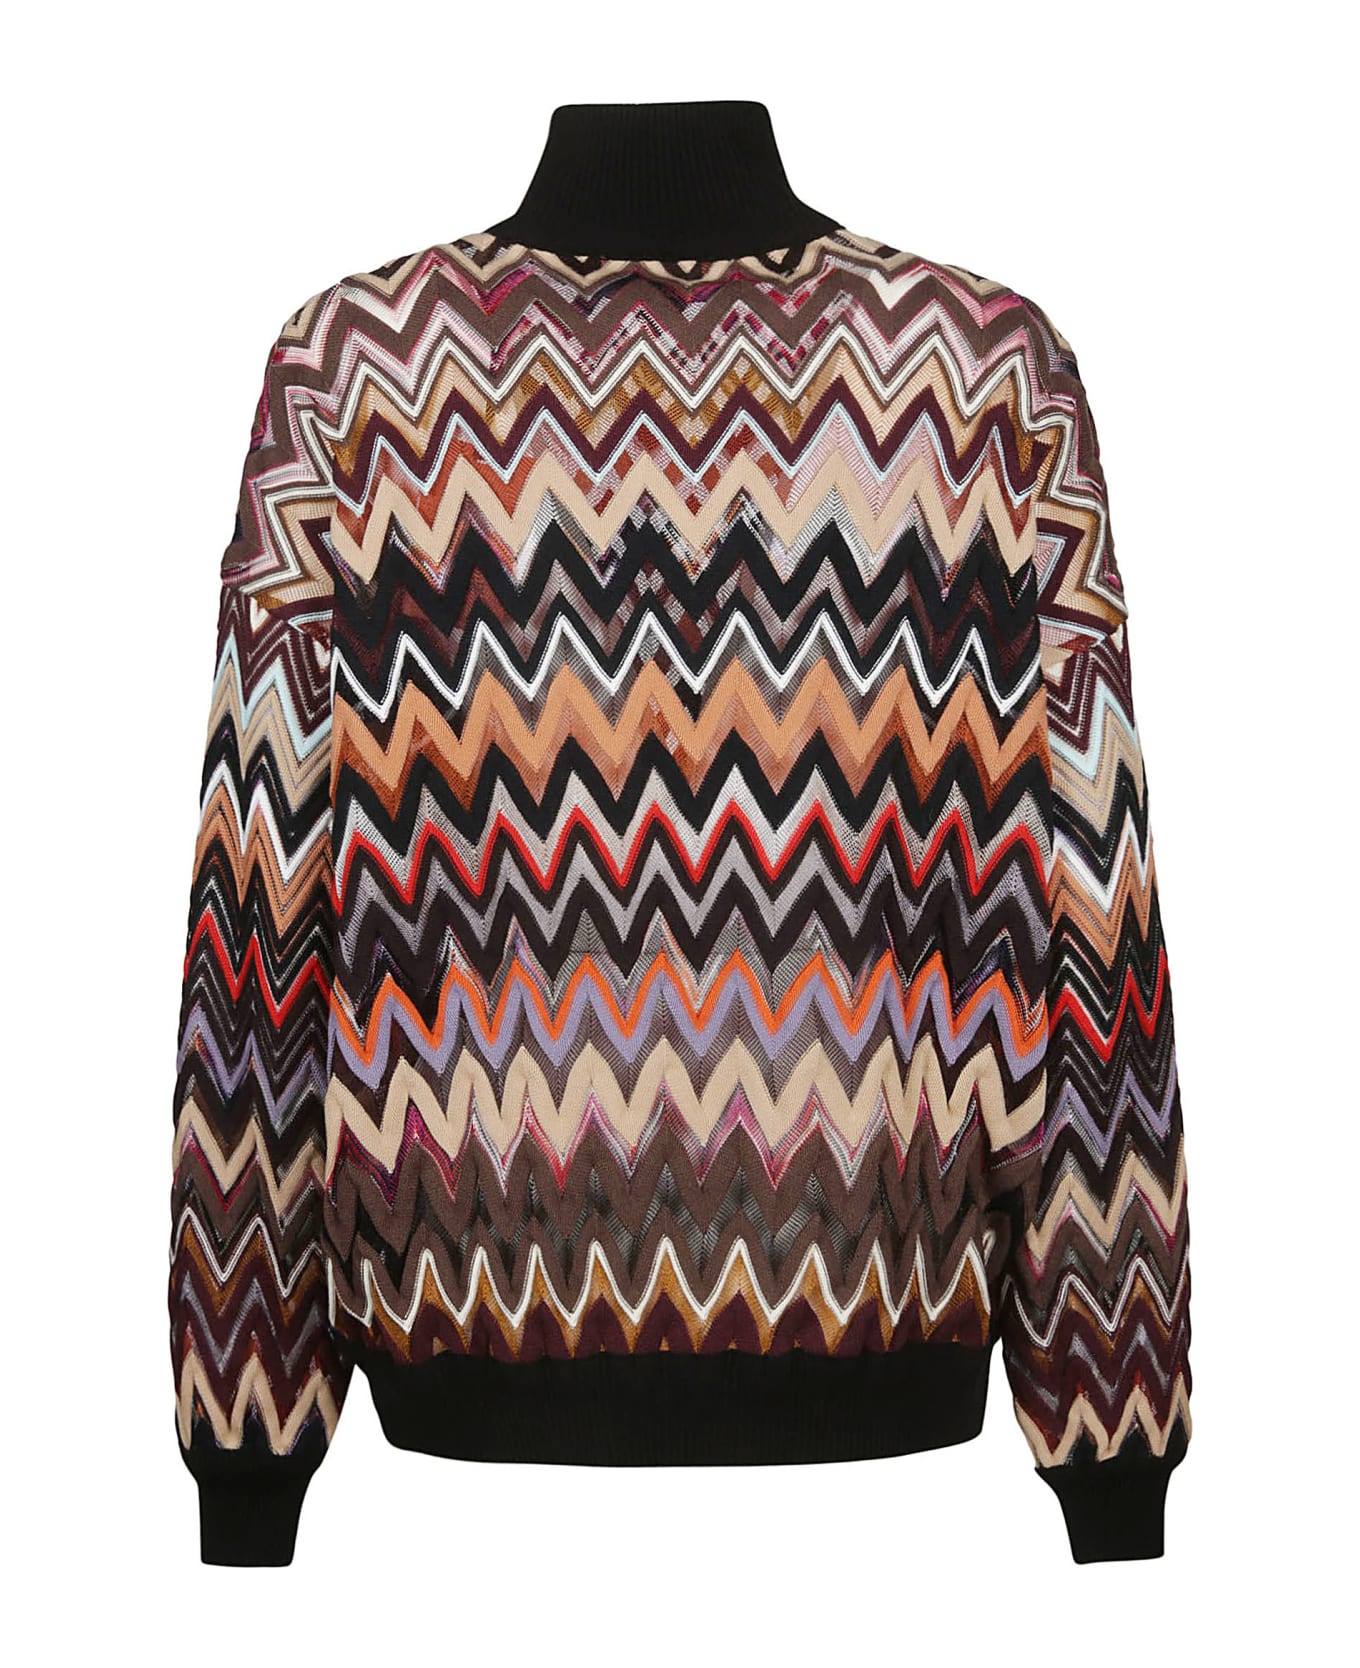 Missoni Turtle Neck Sweater - Multicolor Brown/black